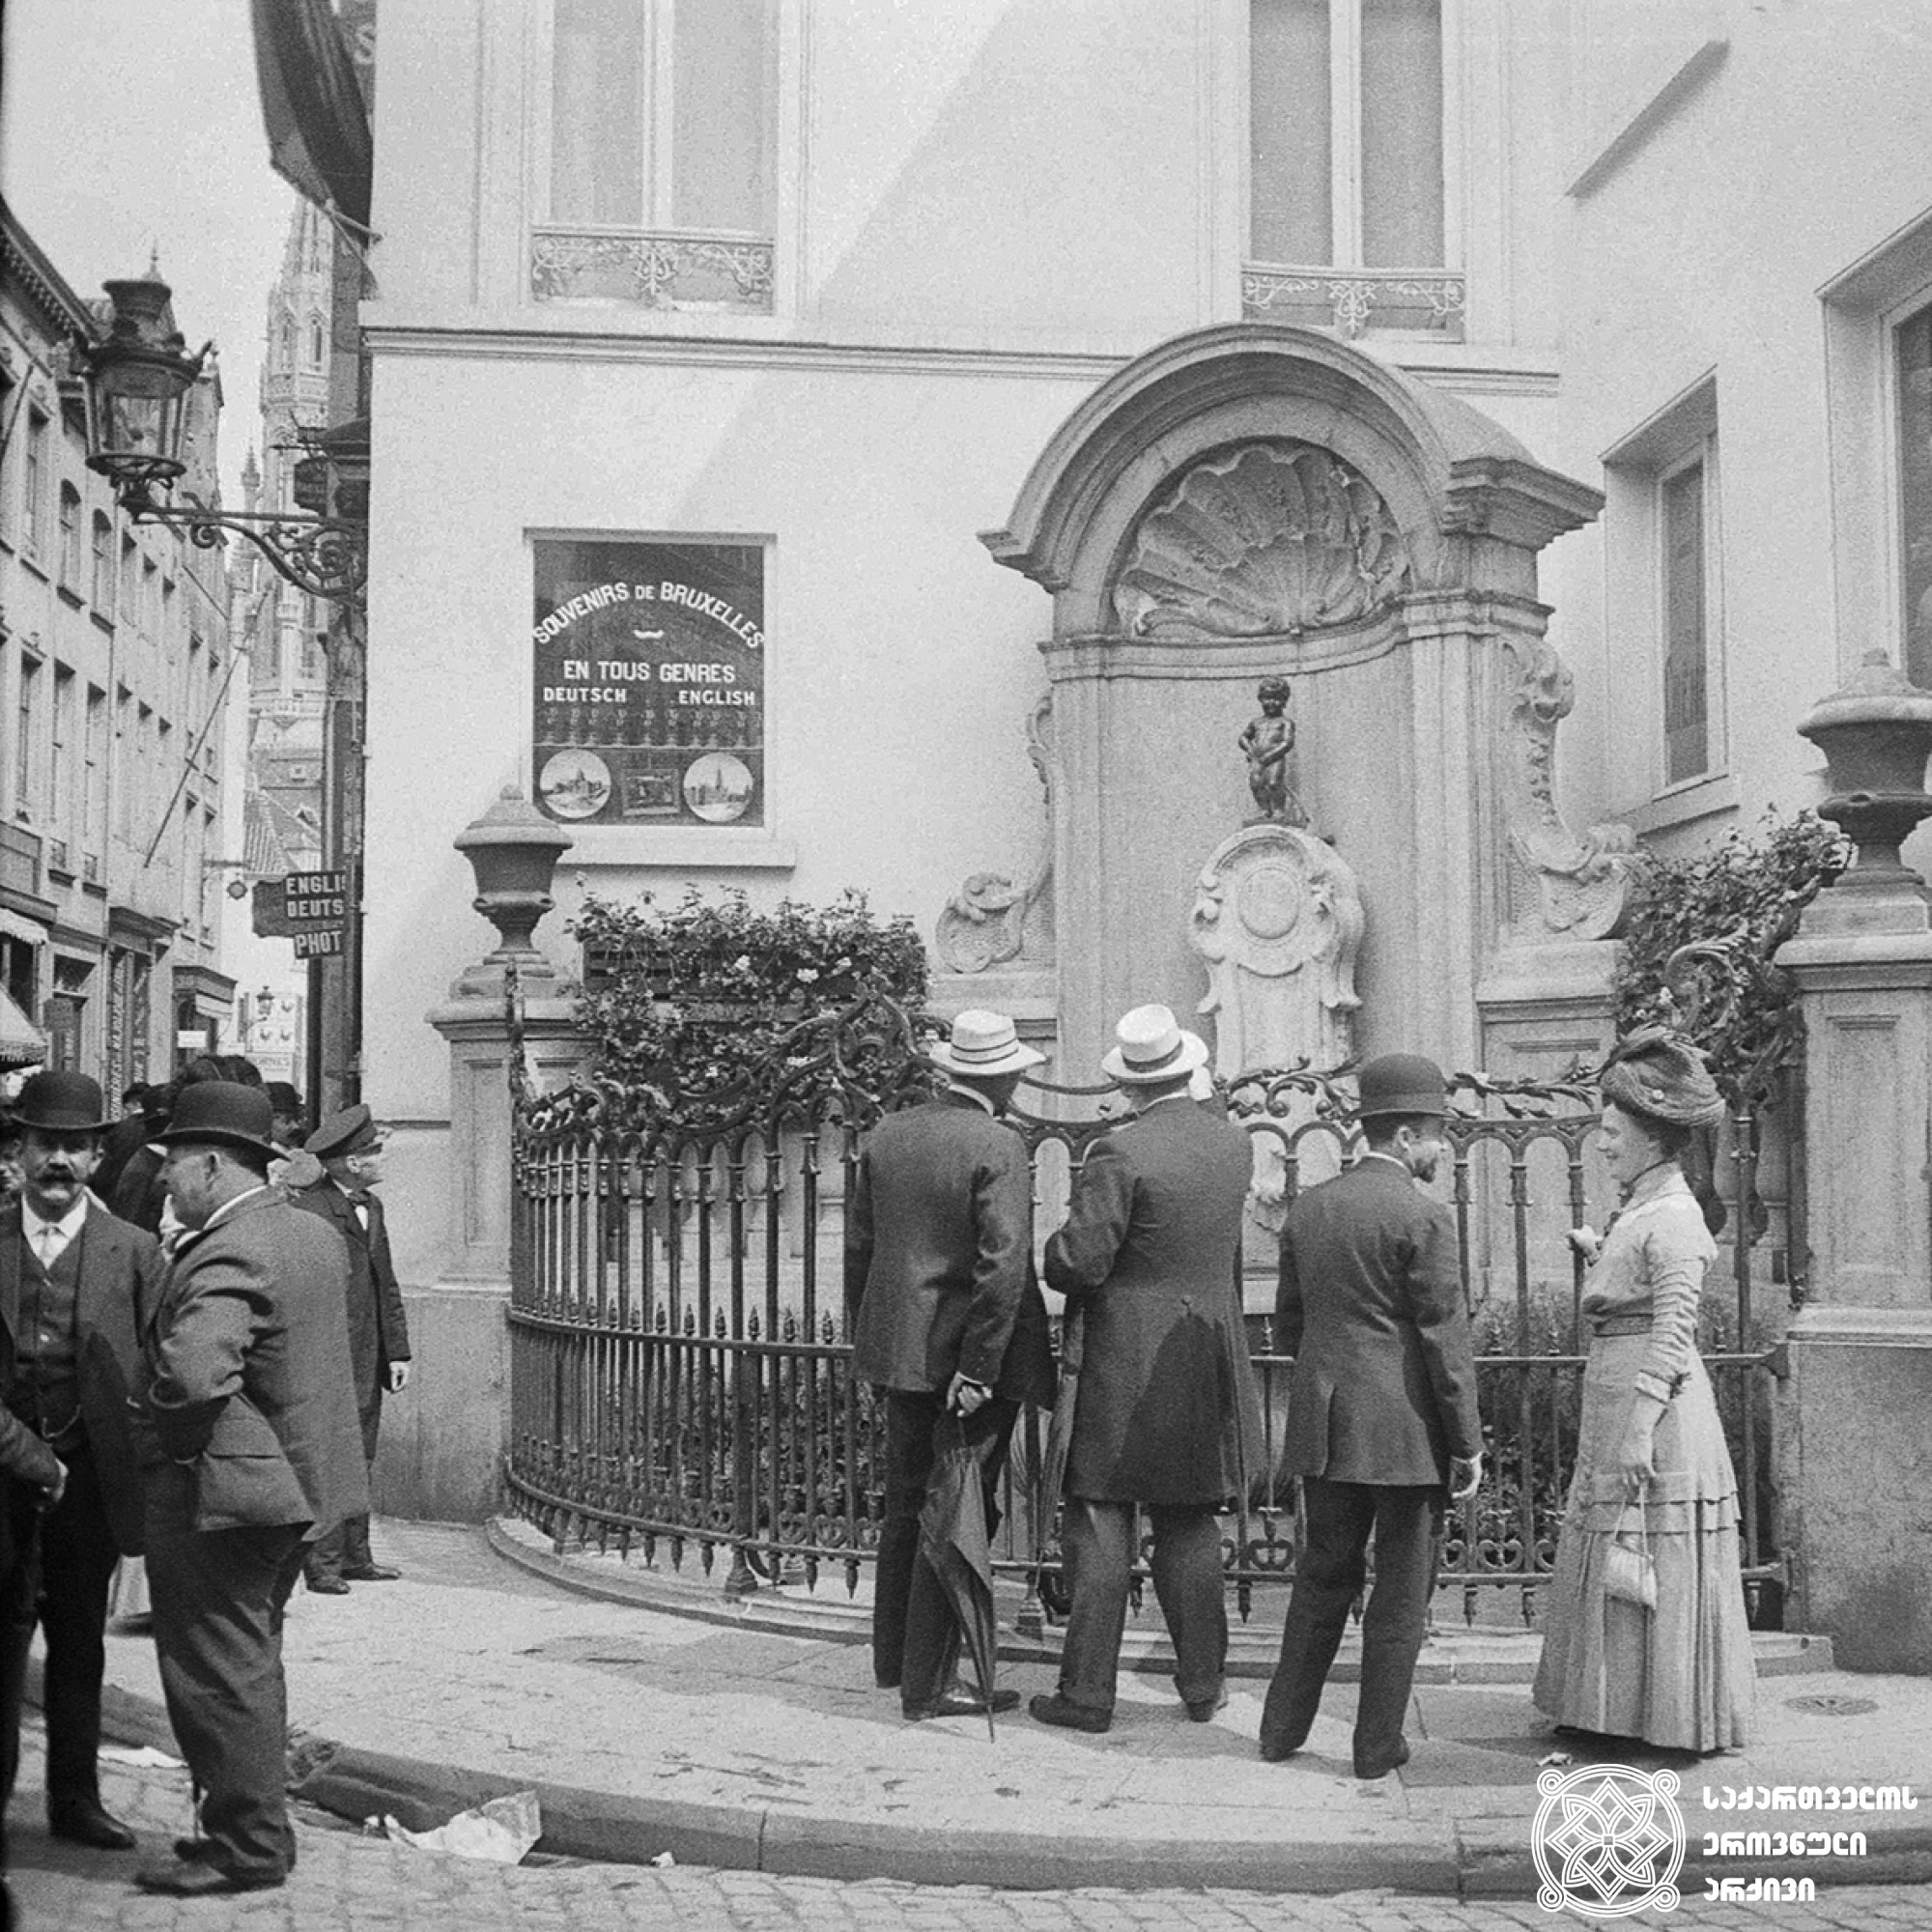 ბრიუსელი, ბელგია <br>
1910 წელი <br>
გიგლო ყარალაშვილის კოლექცია <br>

Brussels, Belgium <br>
1910 <br>
Giglo Karalashvili collection